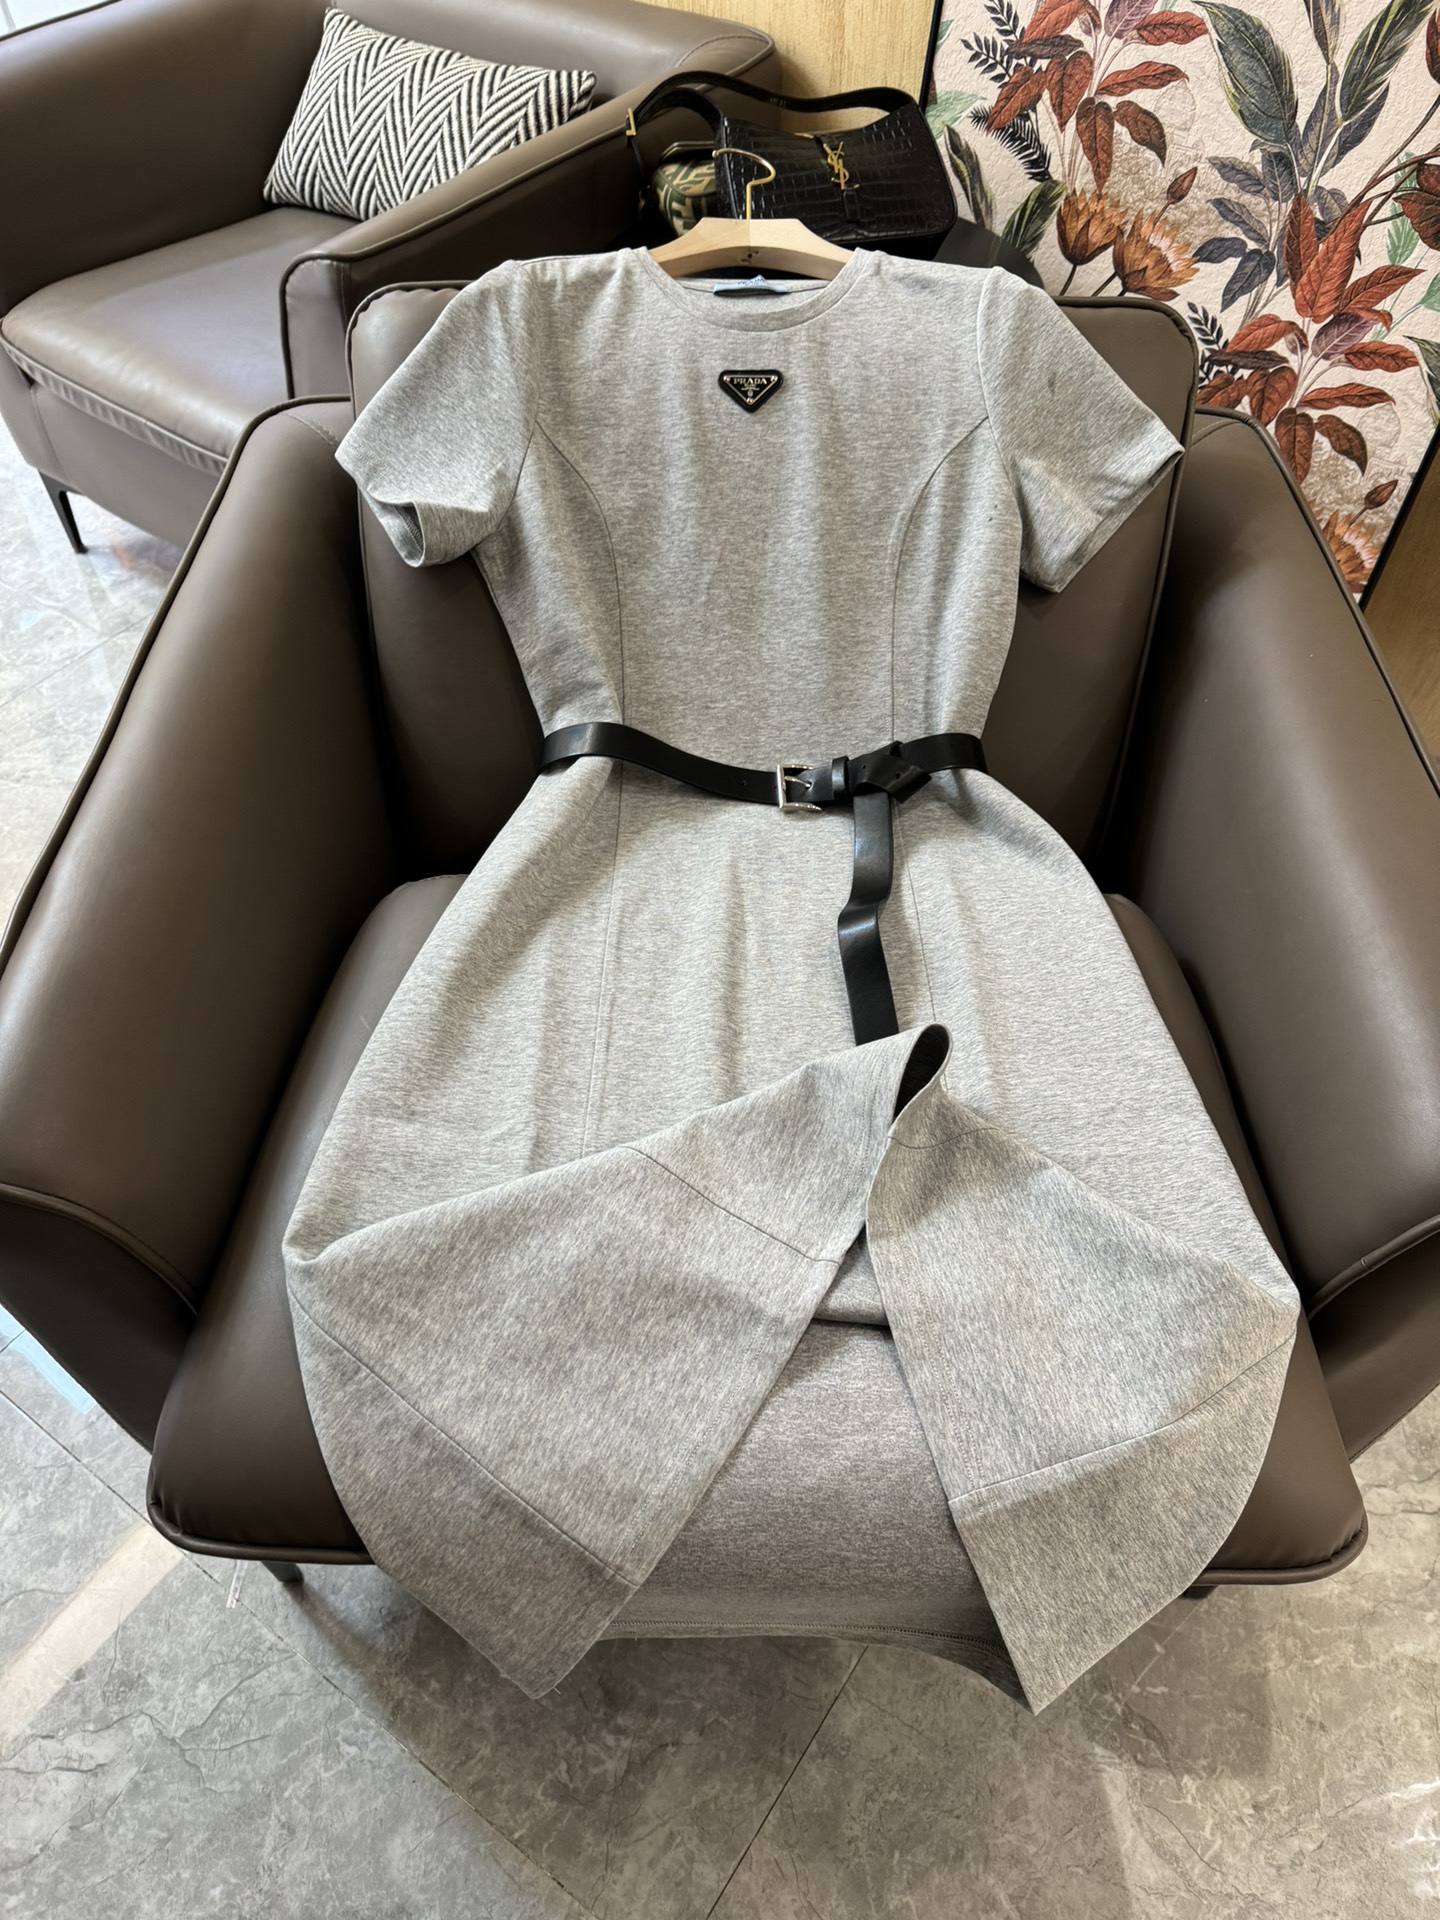 XC24033#新款连衣裙Prada短袖弹力棉修身款配腰带连衣裙灰色黑色SMLXL